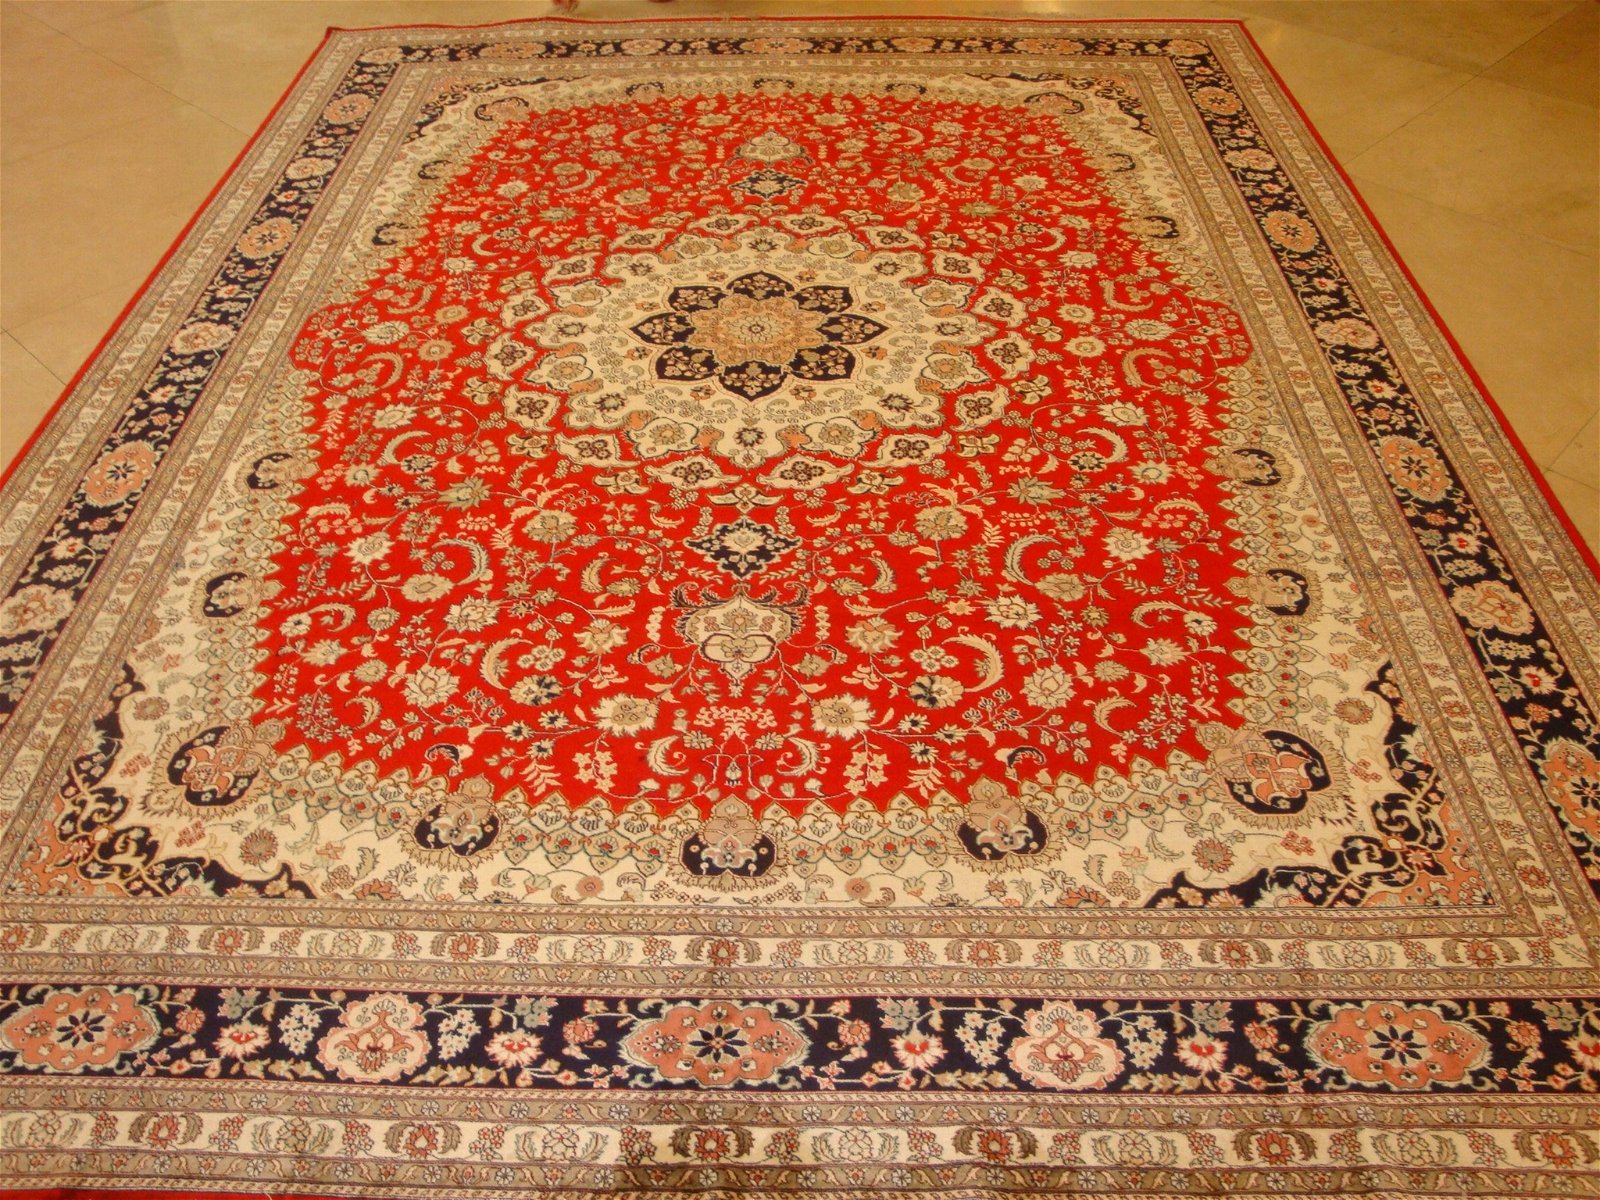 9x12ft 中國紅手工編織真絲地毯暢銷全世界 5